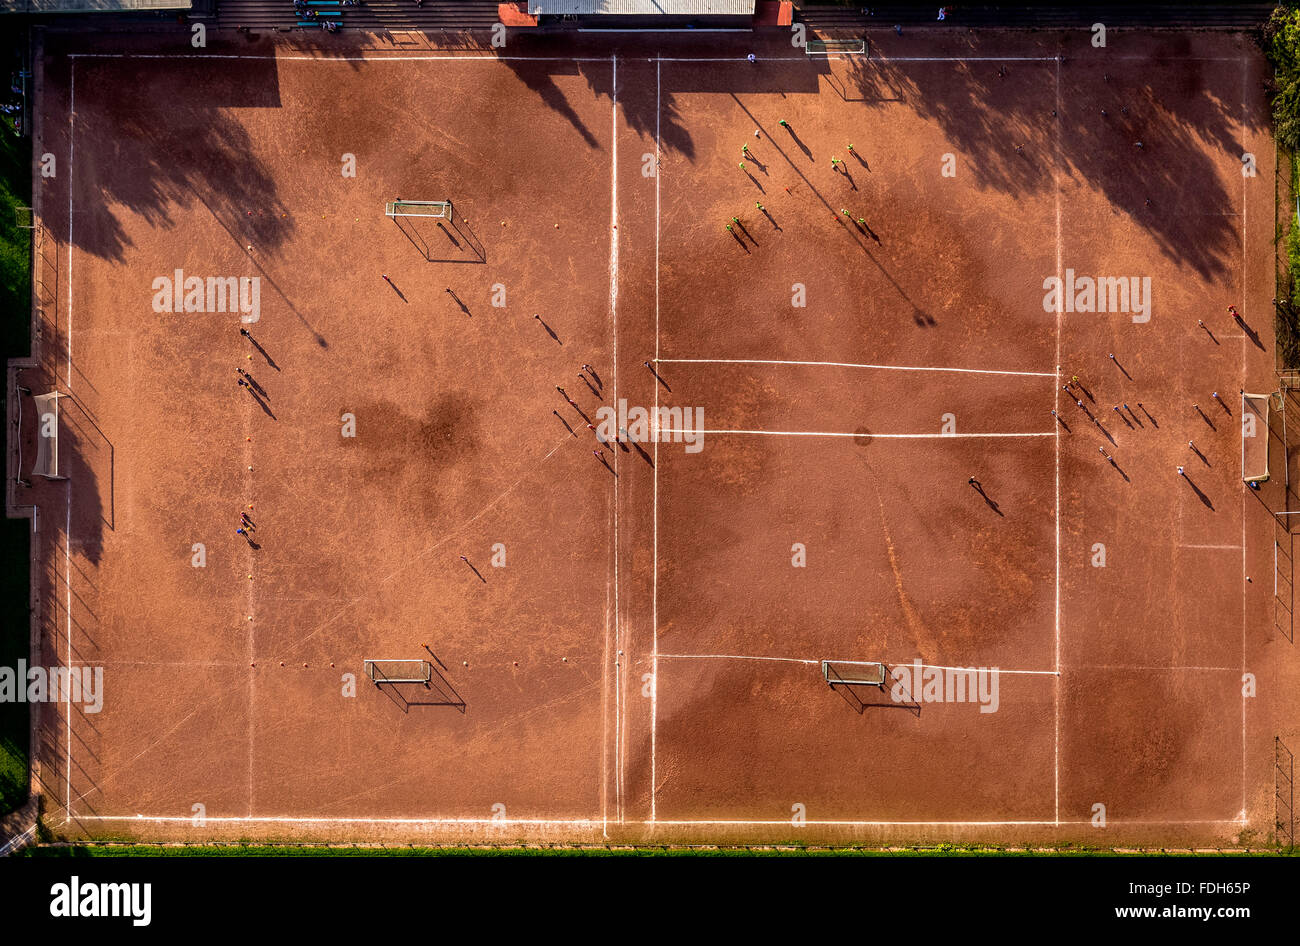 Vista aérea, instalaciones deportivas en Herne Börnig Börnig VfL en la formación de los jóvenes, la grabación perpendicular, campo de fútbol, pista de tenis de tierra batida, Foto de stock